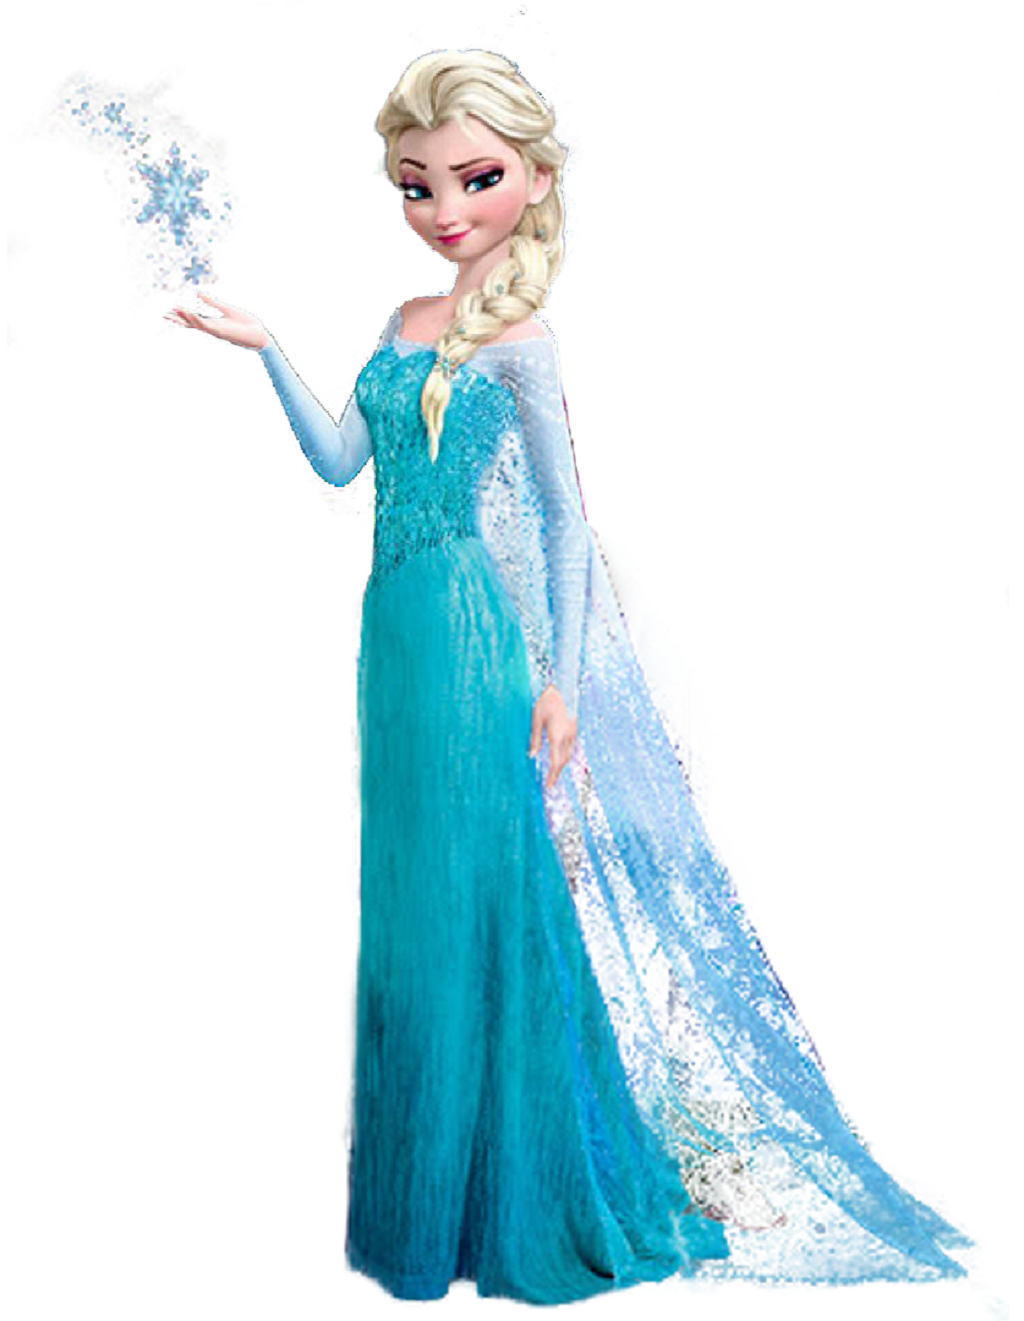 Elsa In Frozen Wallpapers   Best Wallpapers Fan Download Free